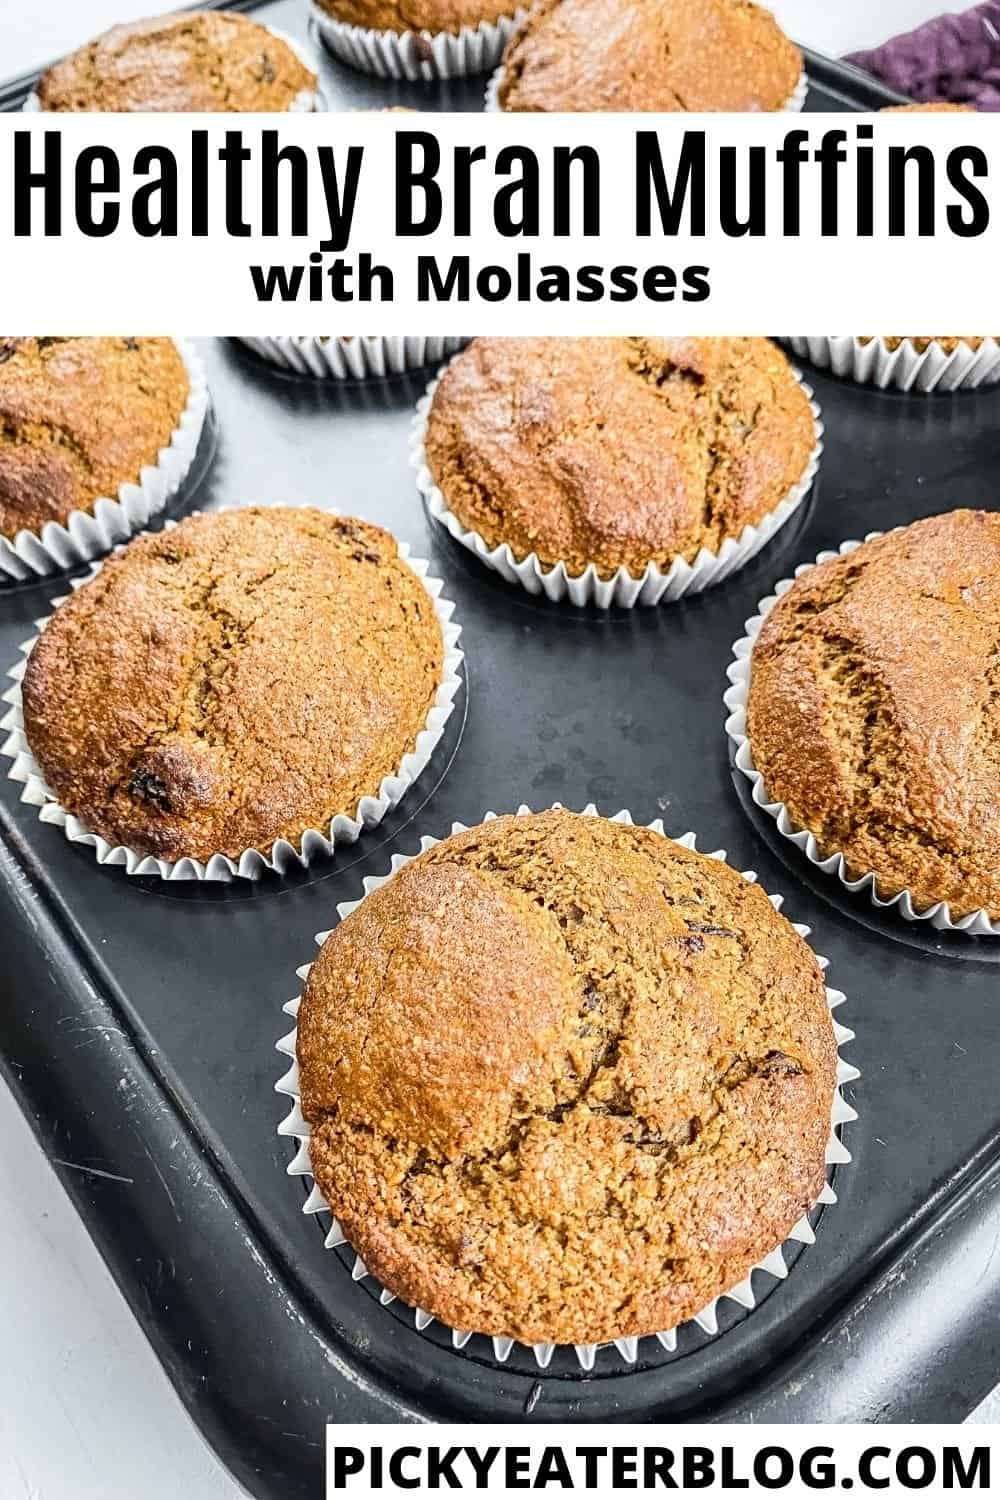 bran muffins in a muffin tin